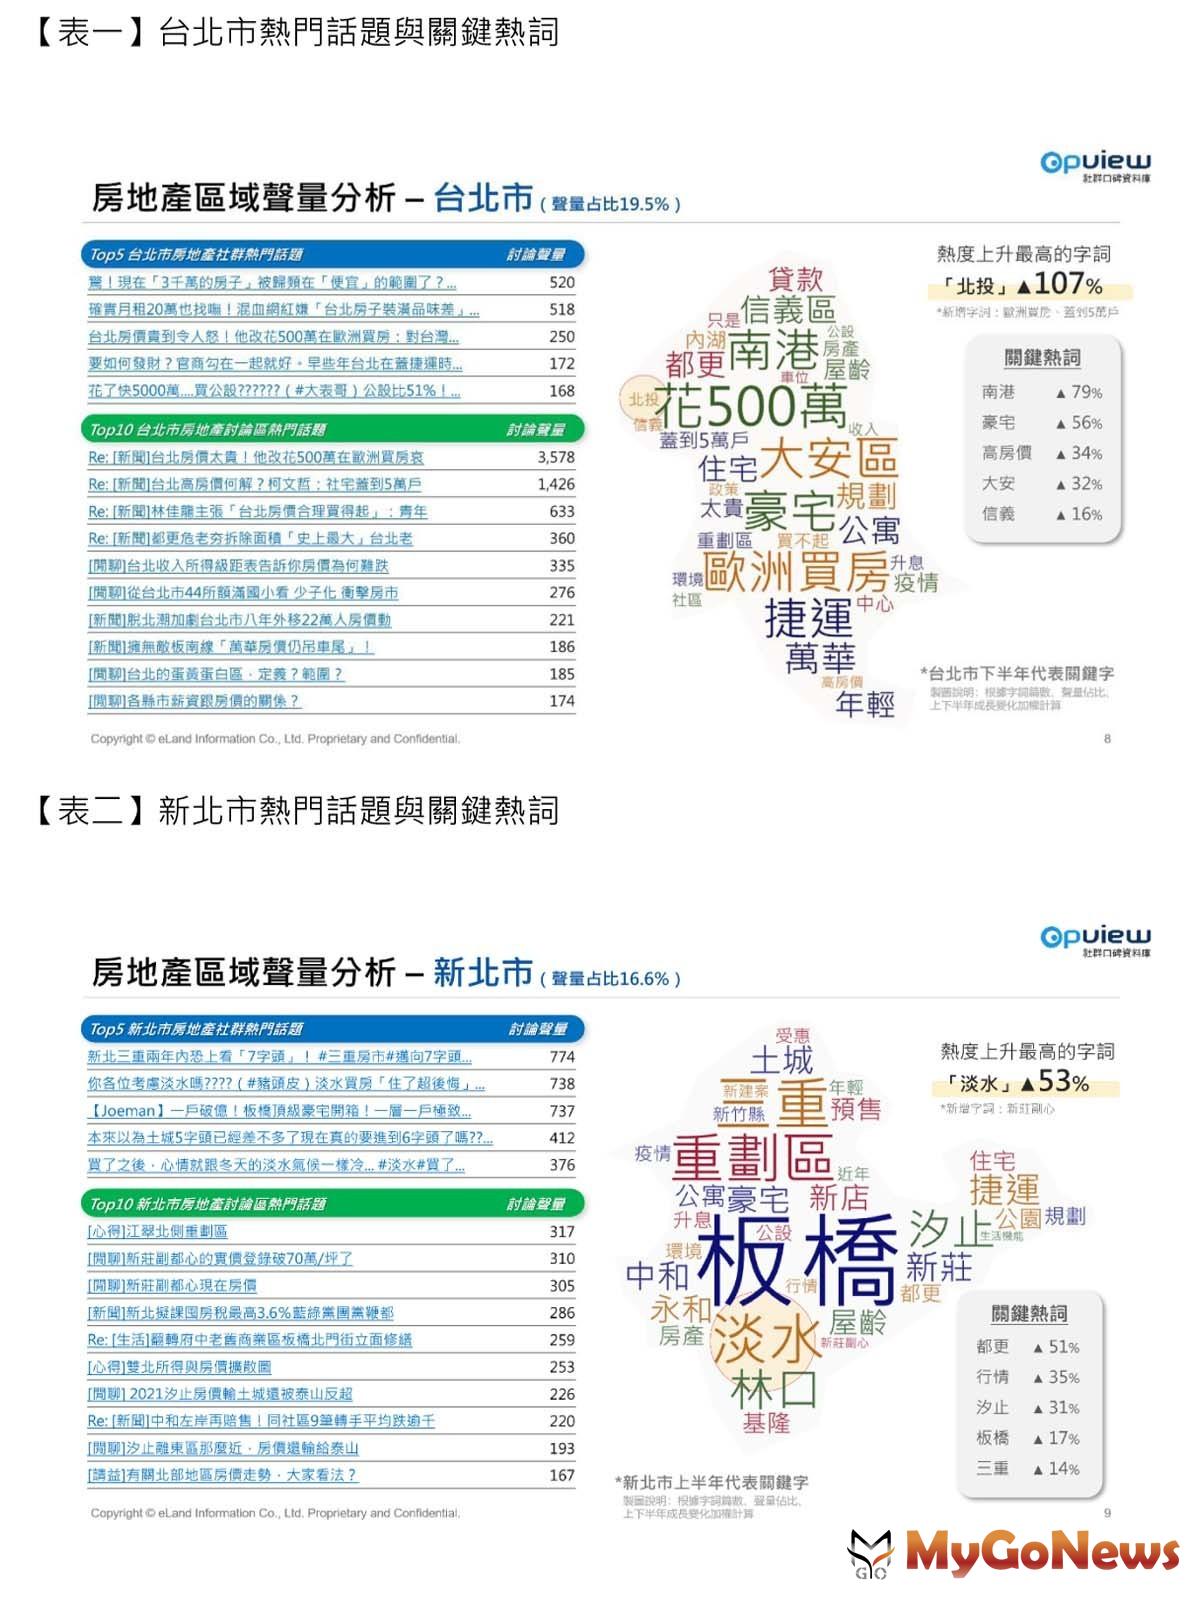 意藍資訊與彥星喬商共同發表的台灣房地產網路聲量調查 MyGoNews房地產新聞 市場快訊